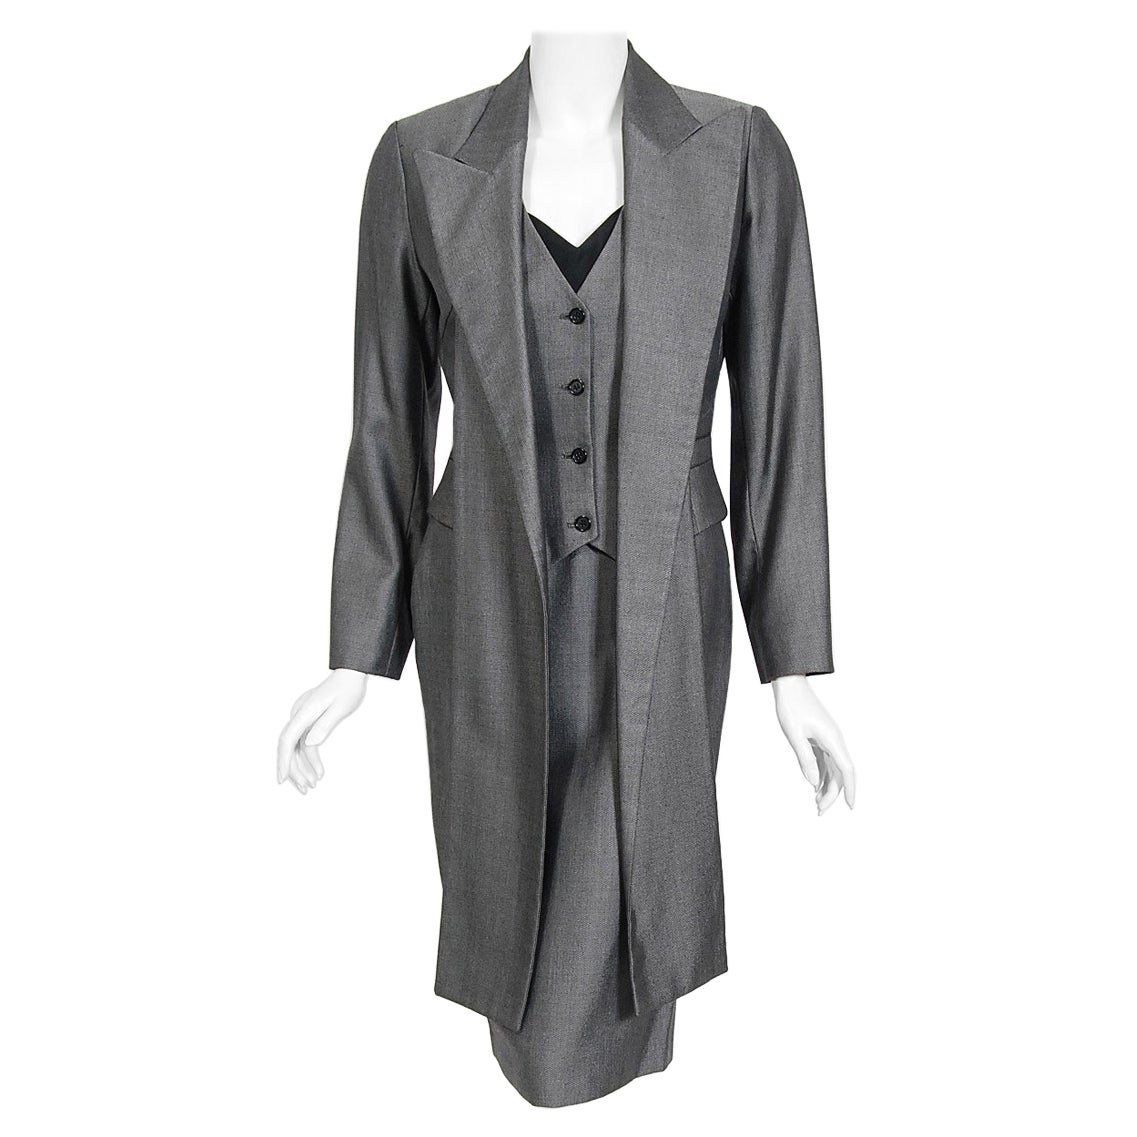 Vintage 1997 Alexander McQueen Gray Sharkskin Wool Hourglass Dress & Suit Jacket